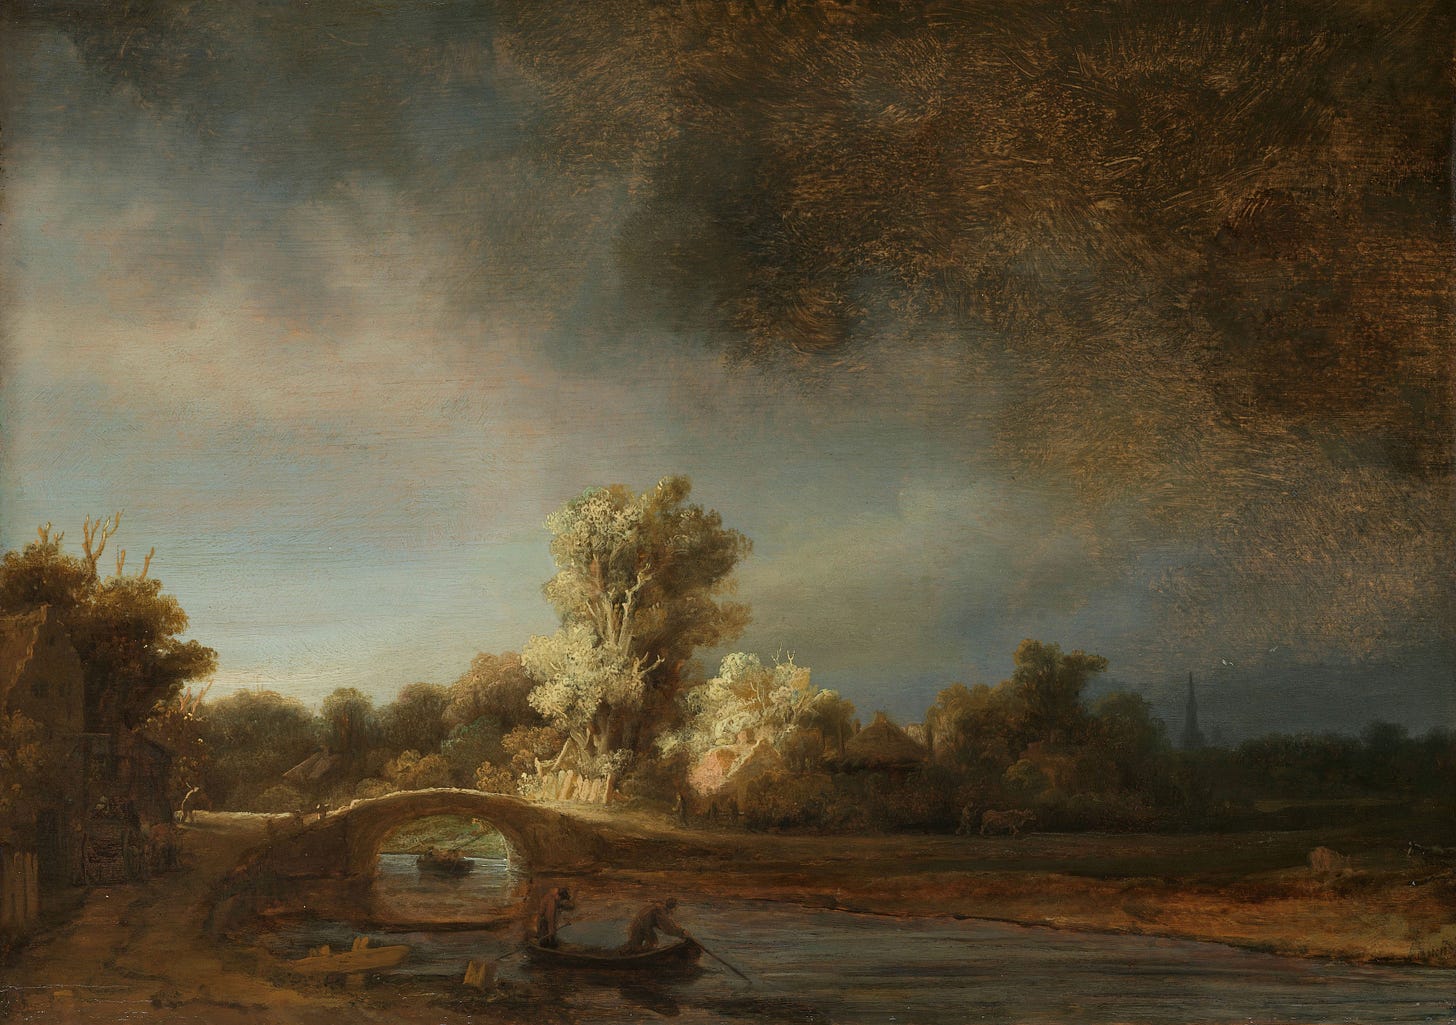 Landscape with a Stone Bridge (c. 1638) by Rembrandt van Rijn